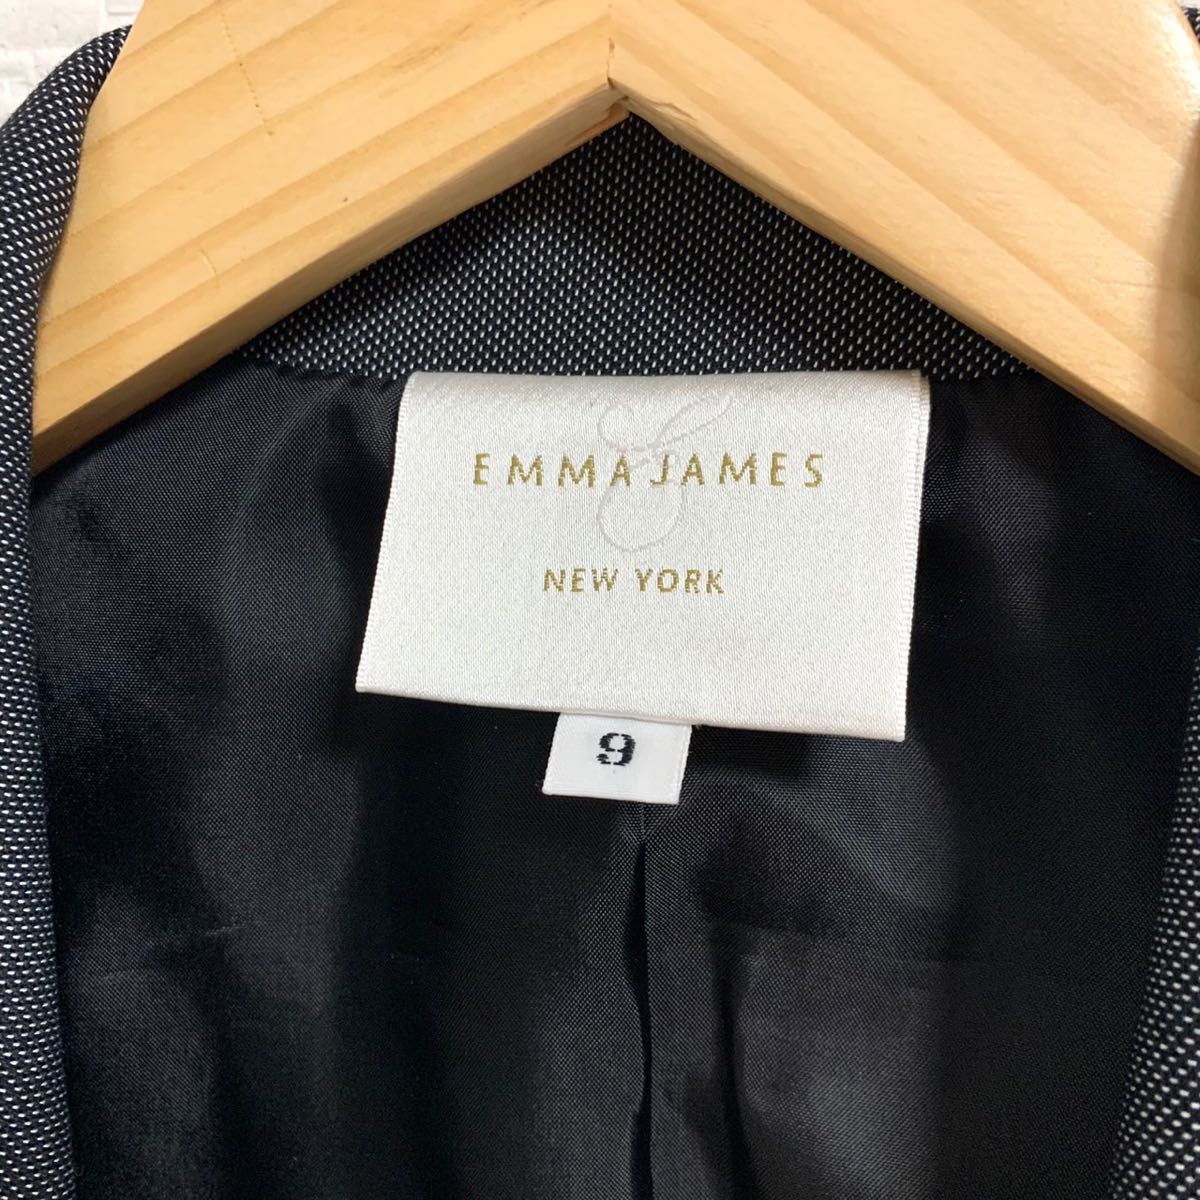 【極上】 EMMA JAMES スカートスーツ セットアップ 9号 スーツ 就活 リクルート 入学式 式典 フォーマル 仕事